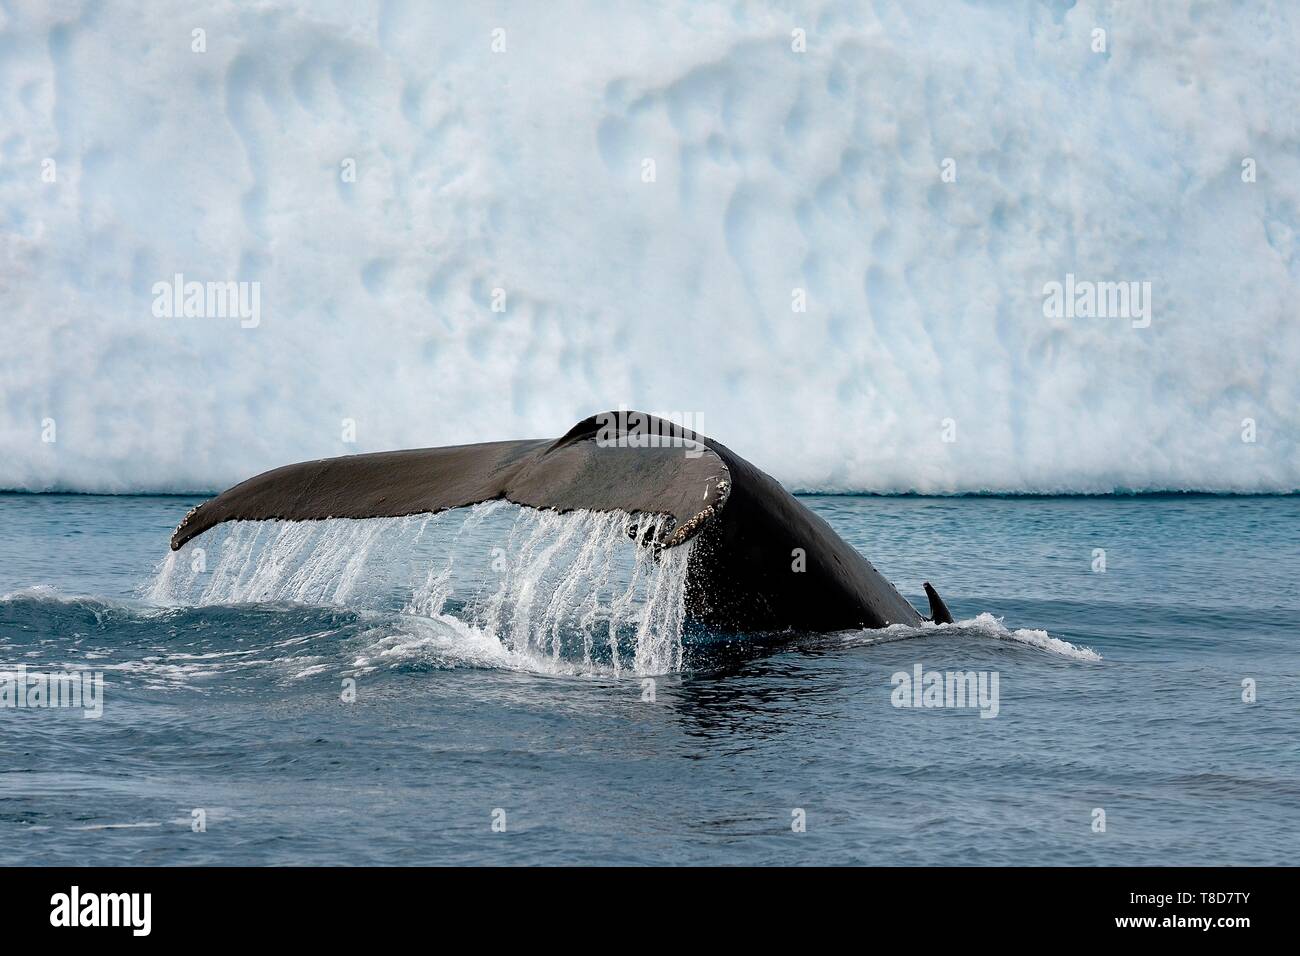 Grönland, Westküste, Diskobucht, Ilulissat Icefjord als Weltkulturerbe von der UNESCO, ist der Mund der Gletscher Sermeq Kujalleq, Schwanz einer tauchen Buckelwal (Megaptera novaeangliae) vor einem Eisberg aufgeführt Stockfoto